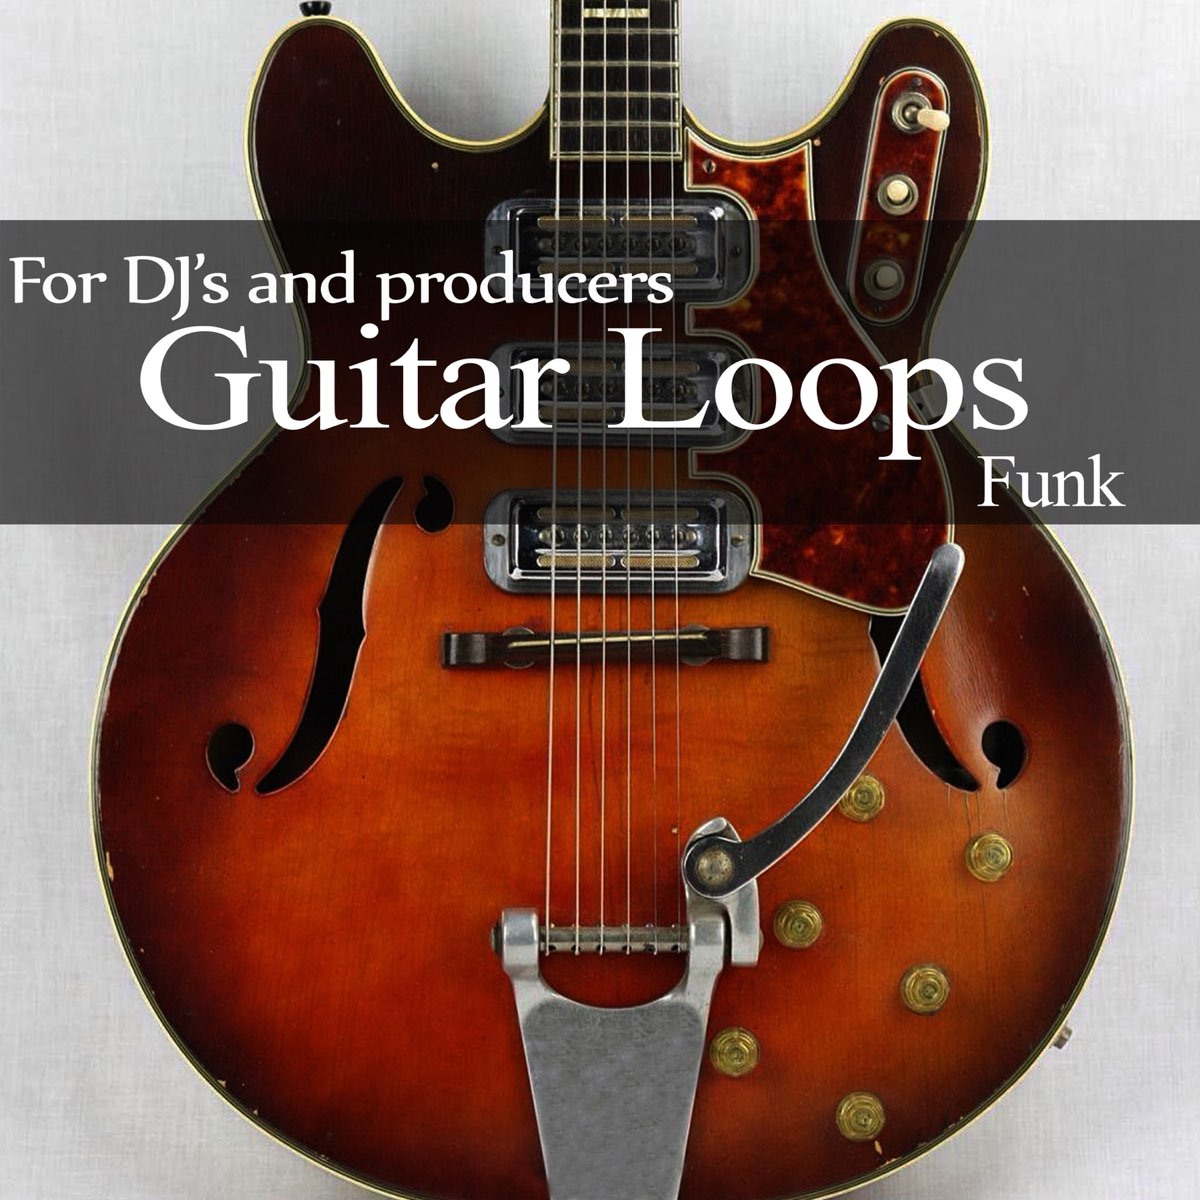 Guitar Loops: Funk by Music Loops on Apple Music